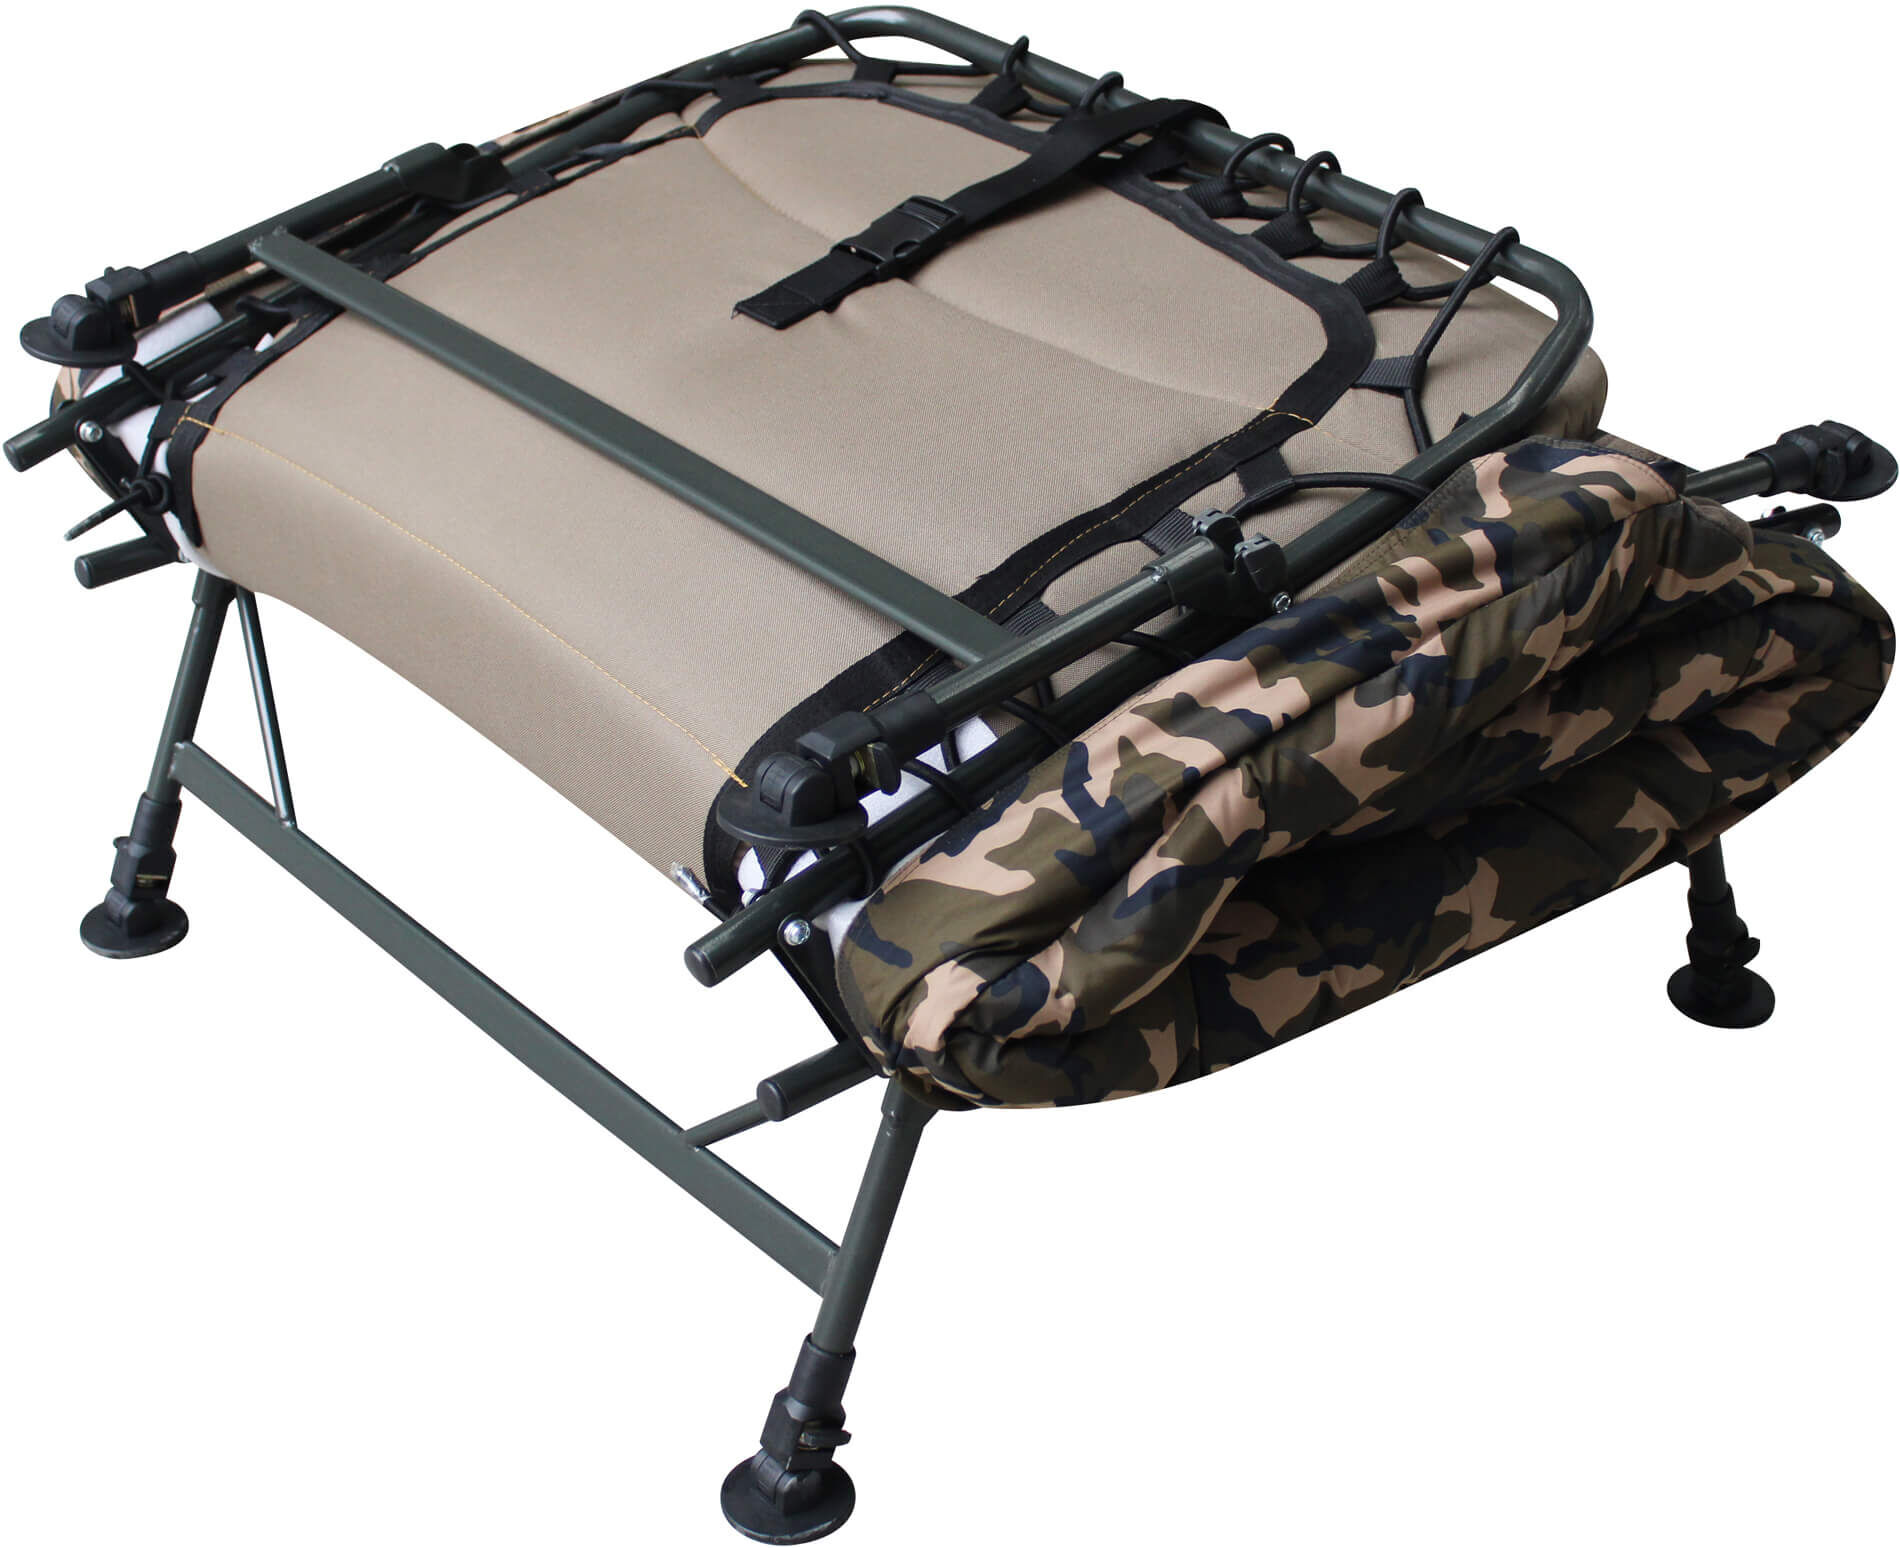 Das Bedchair Sleeping Bag System besitzt ein kleines Packmaß und ist leicht zu transportieren.